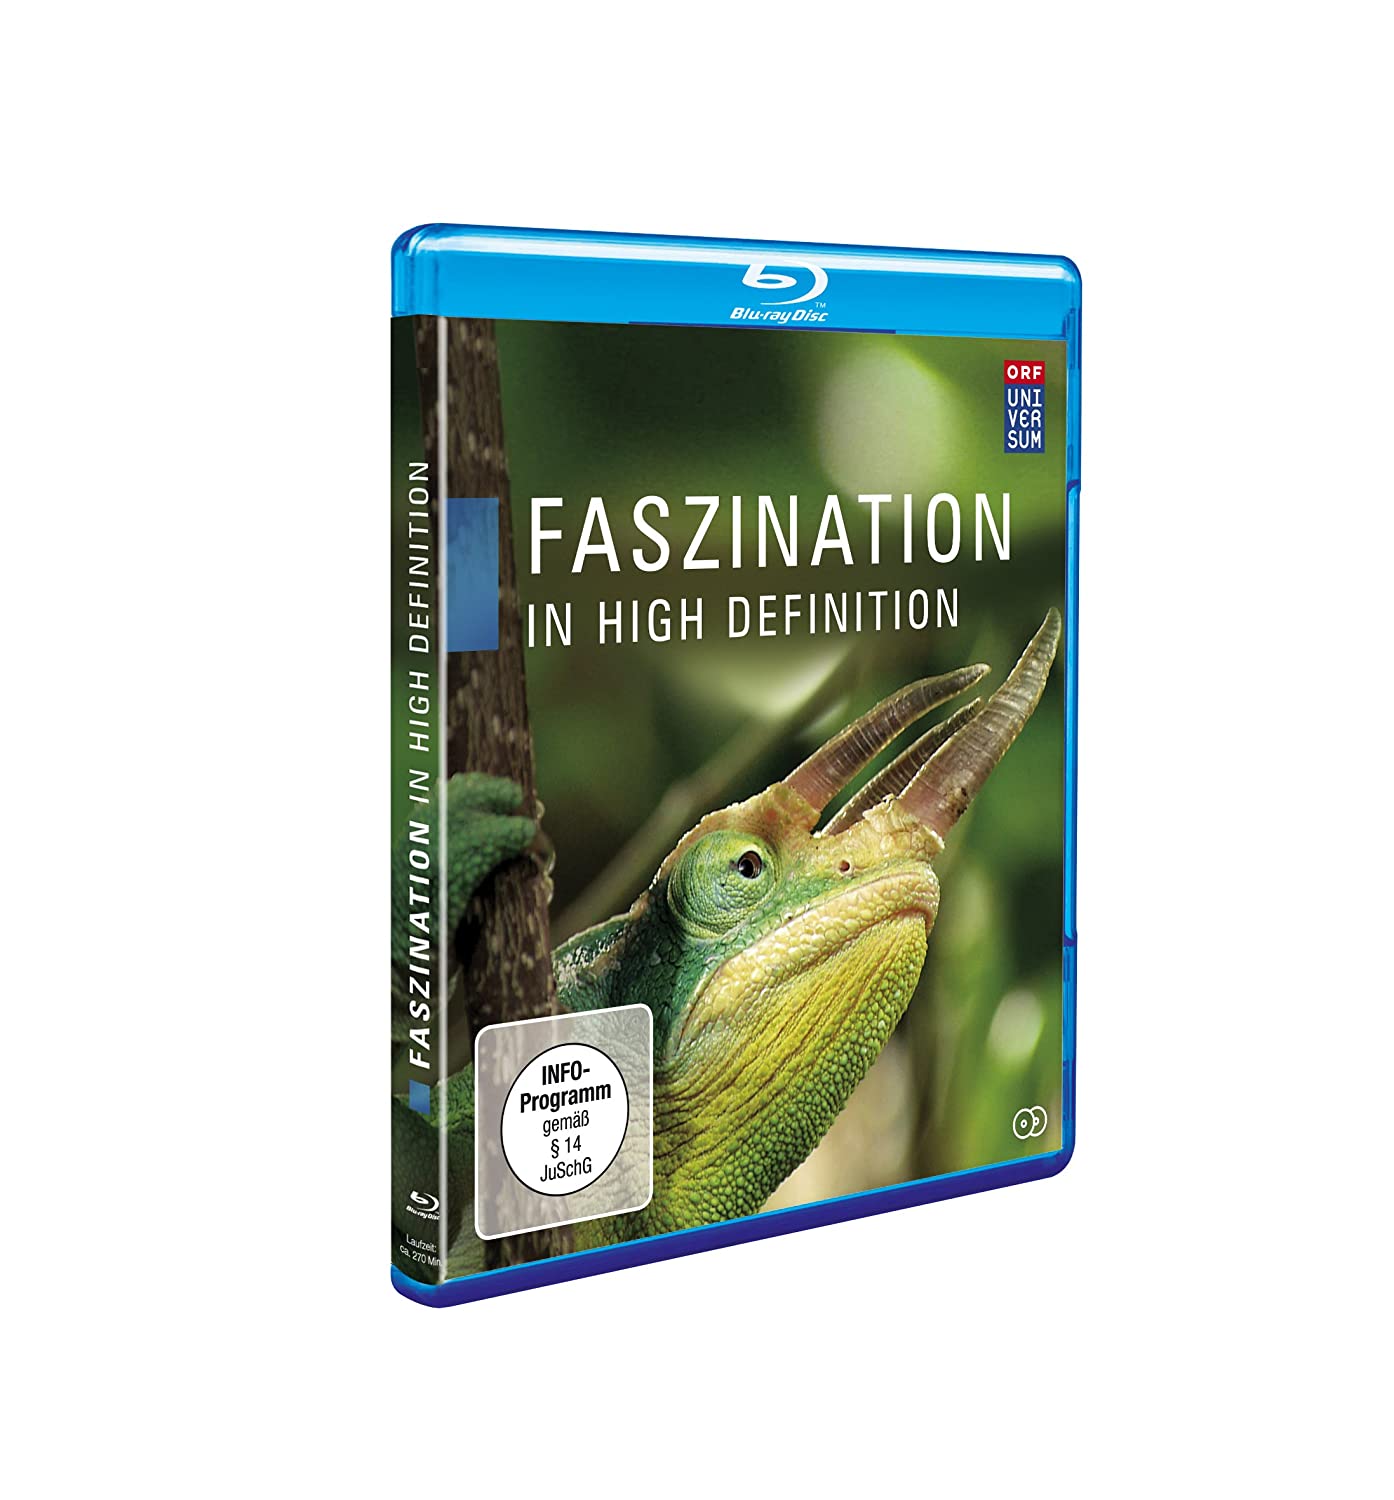 Faszination Garten Neu Amazon Faszination In High Definition 25 Jahre